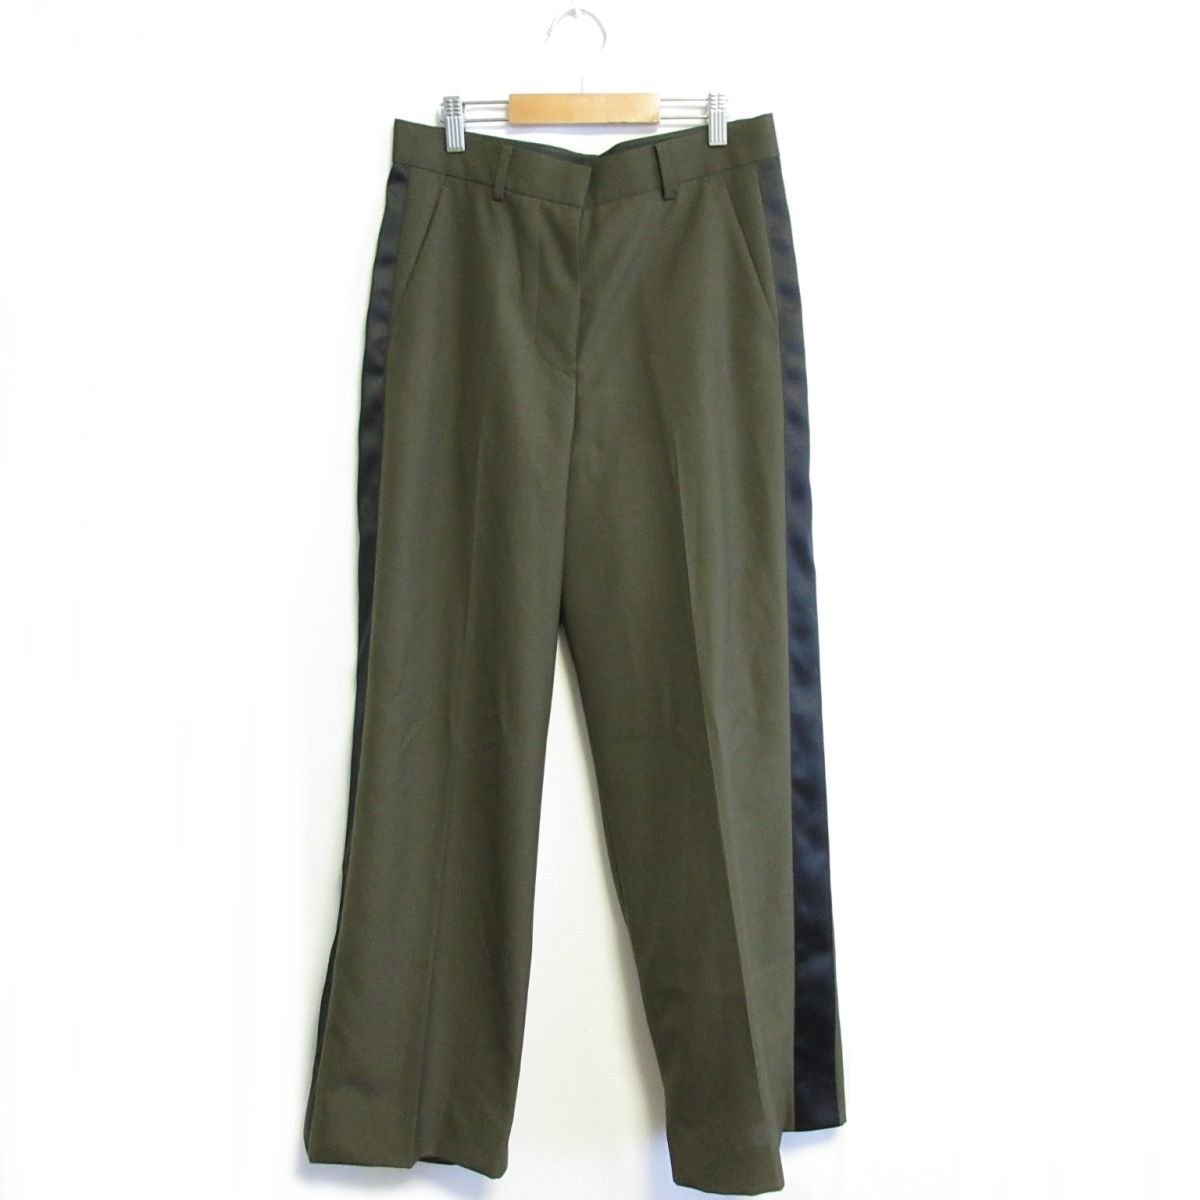 美品 22SS sacai サカイ Suiting Pants サイドライン スーチングパンツ ワイド スラックスパンツ 22-05905 2 カーキ×ブラック